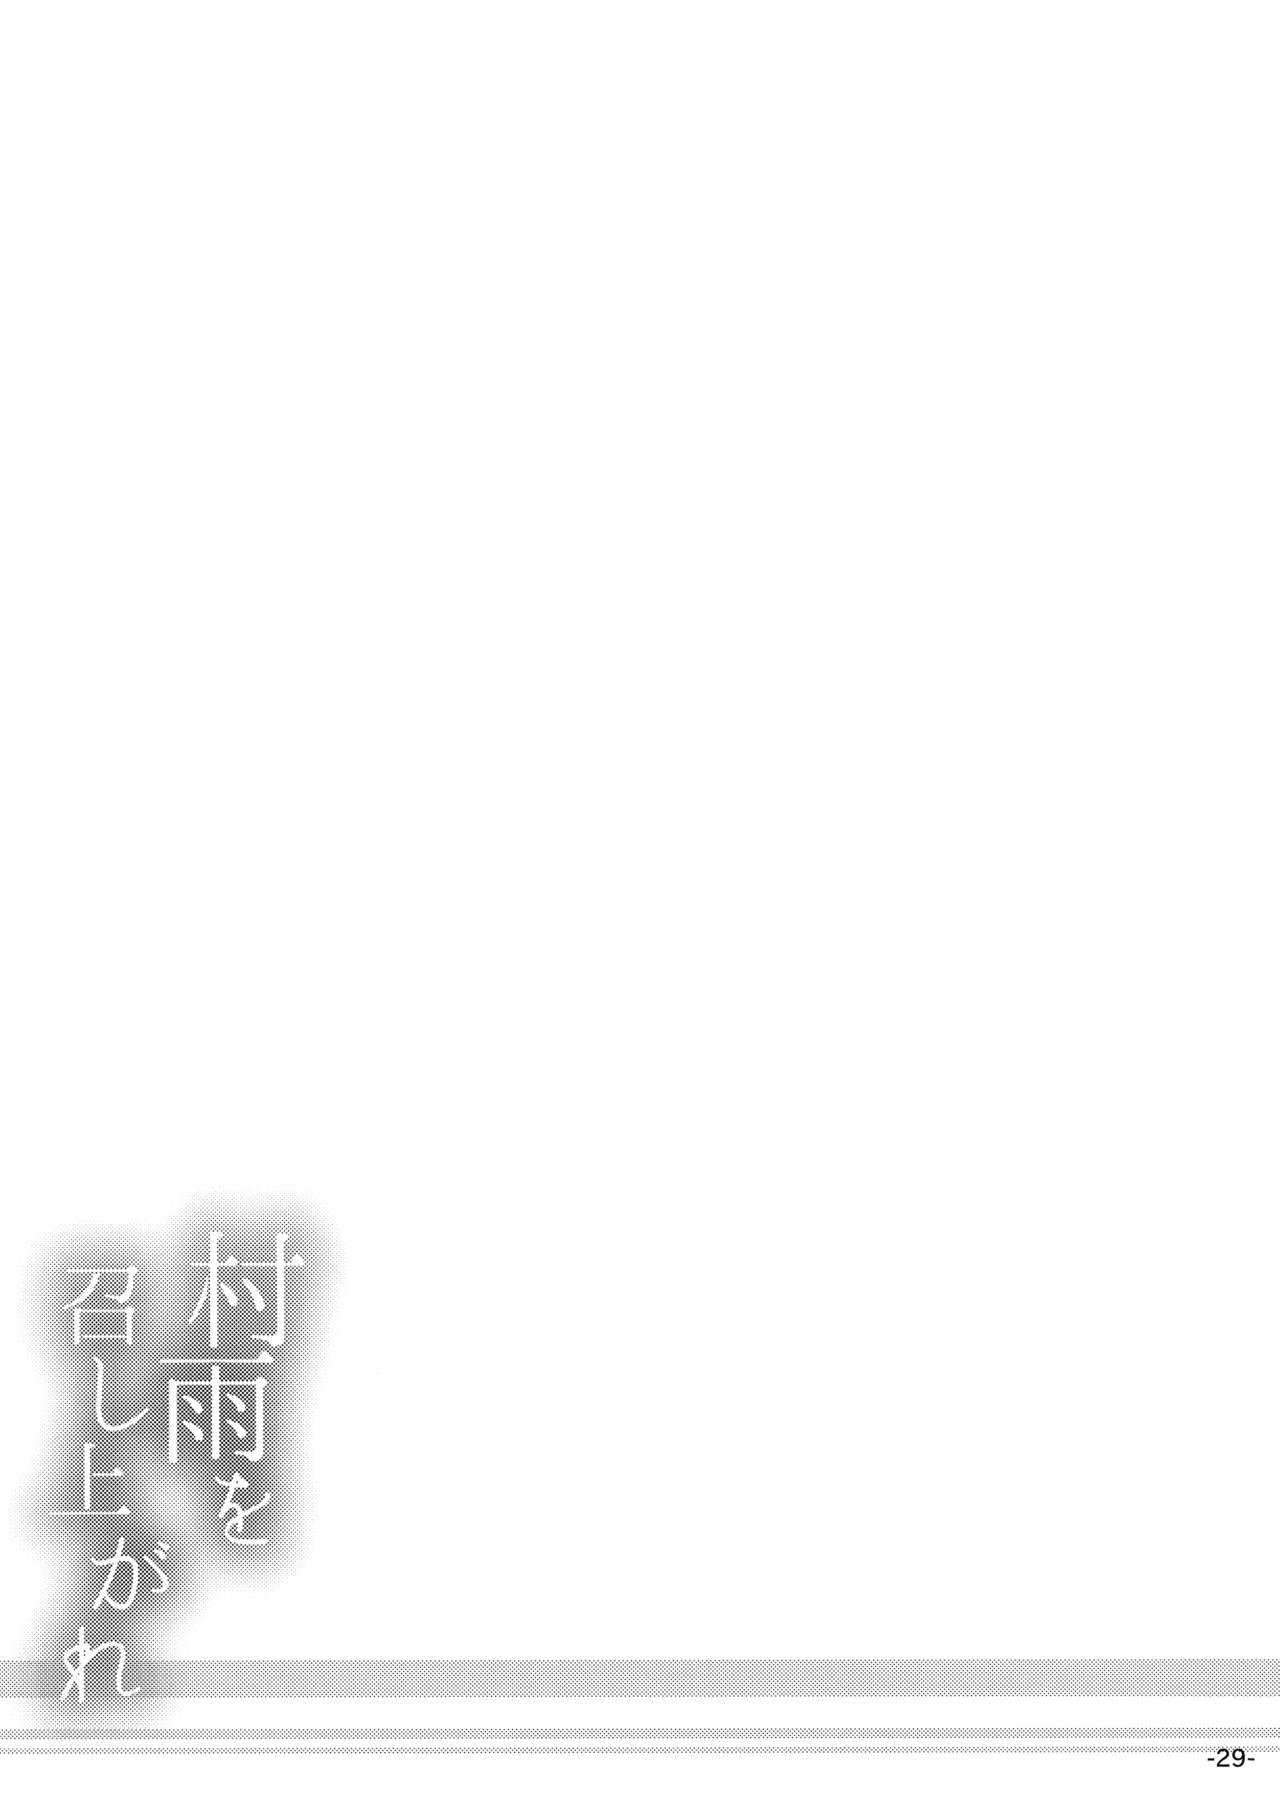 村雨を召し上がれ(COMIC1☆10) [ROCK CLIME (ダンボ)]  (艦隊これくしょん -艦これ-) [中国翻訳](35页)